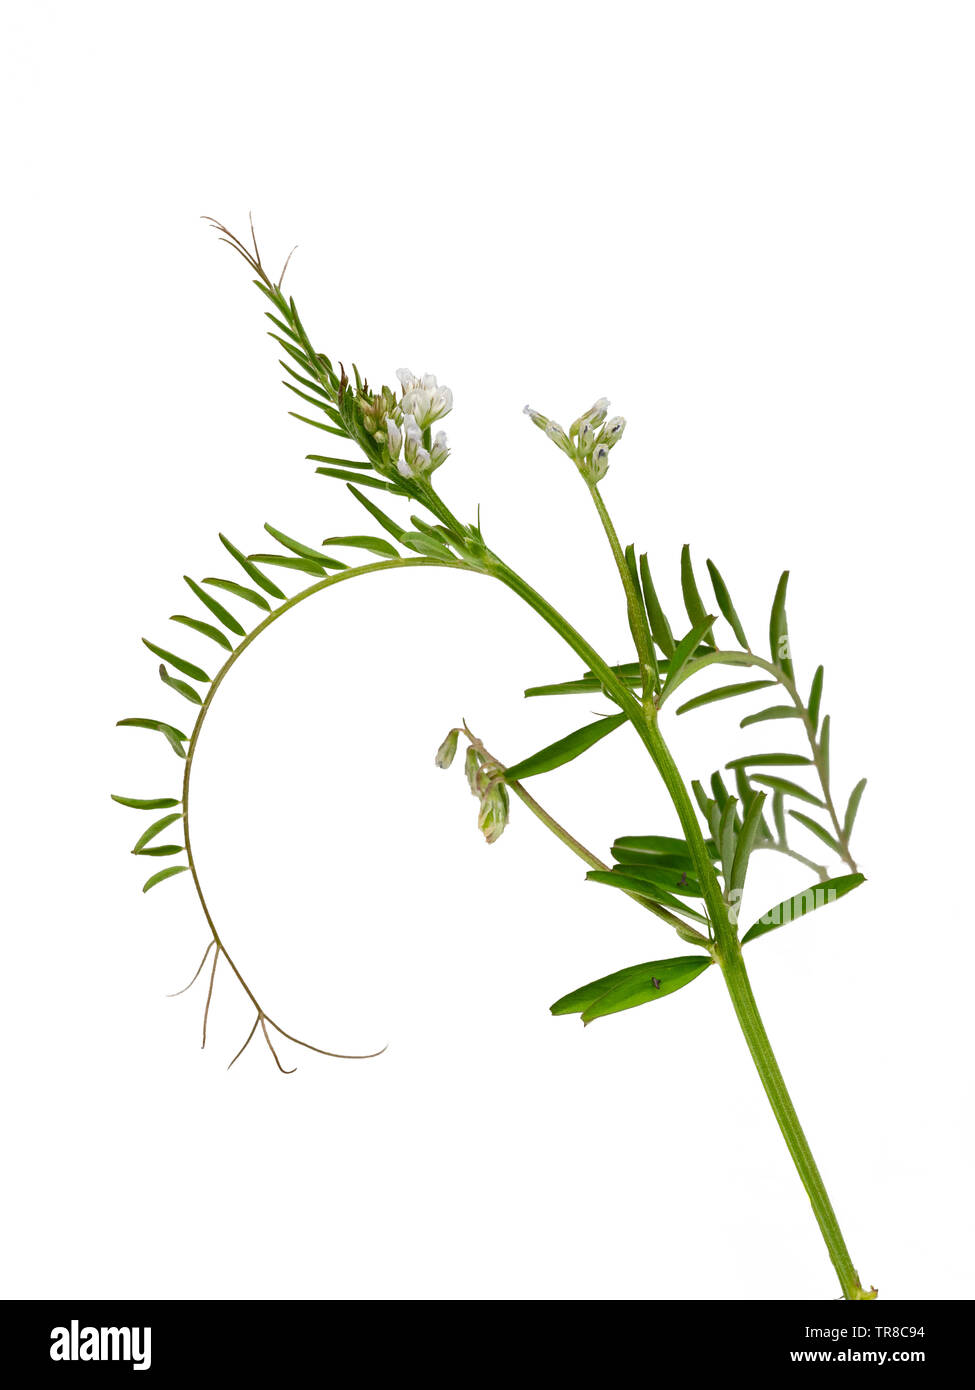 Grüne Laub, braunen Ranken und kleine lila gestreiften weißen Blüten der jährlichen Gründüngung Erntegut, Vicia hirsuta, behaarte Tara, auf weißem Hintergrund Stockfoto